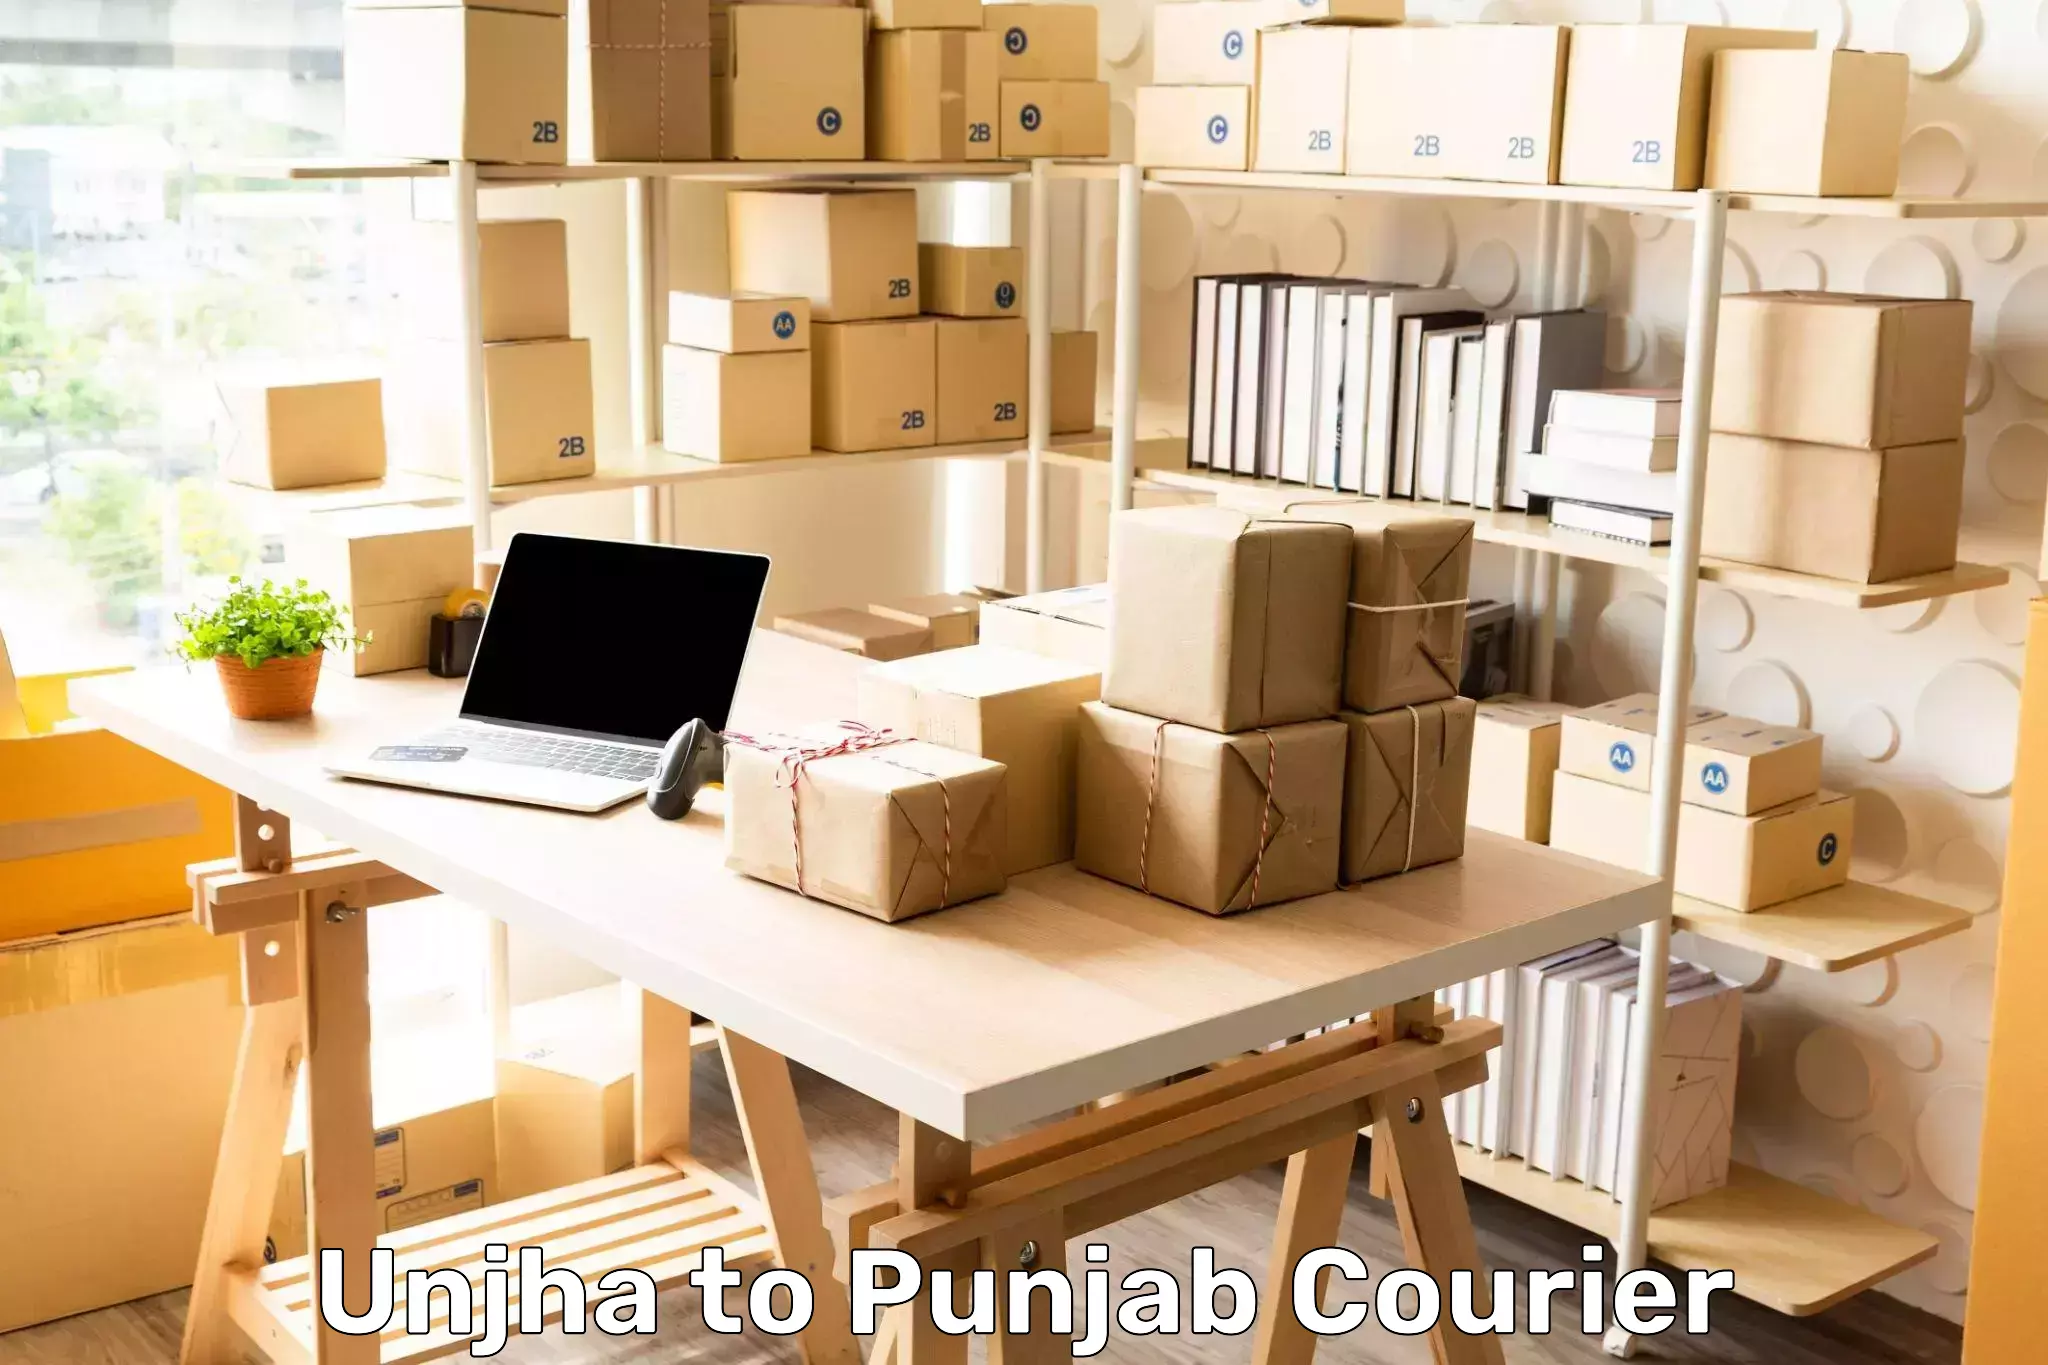 Wholesale parcel delivery Unjha to Punjab